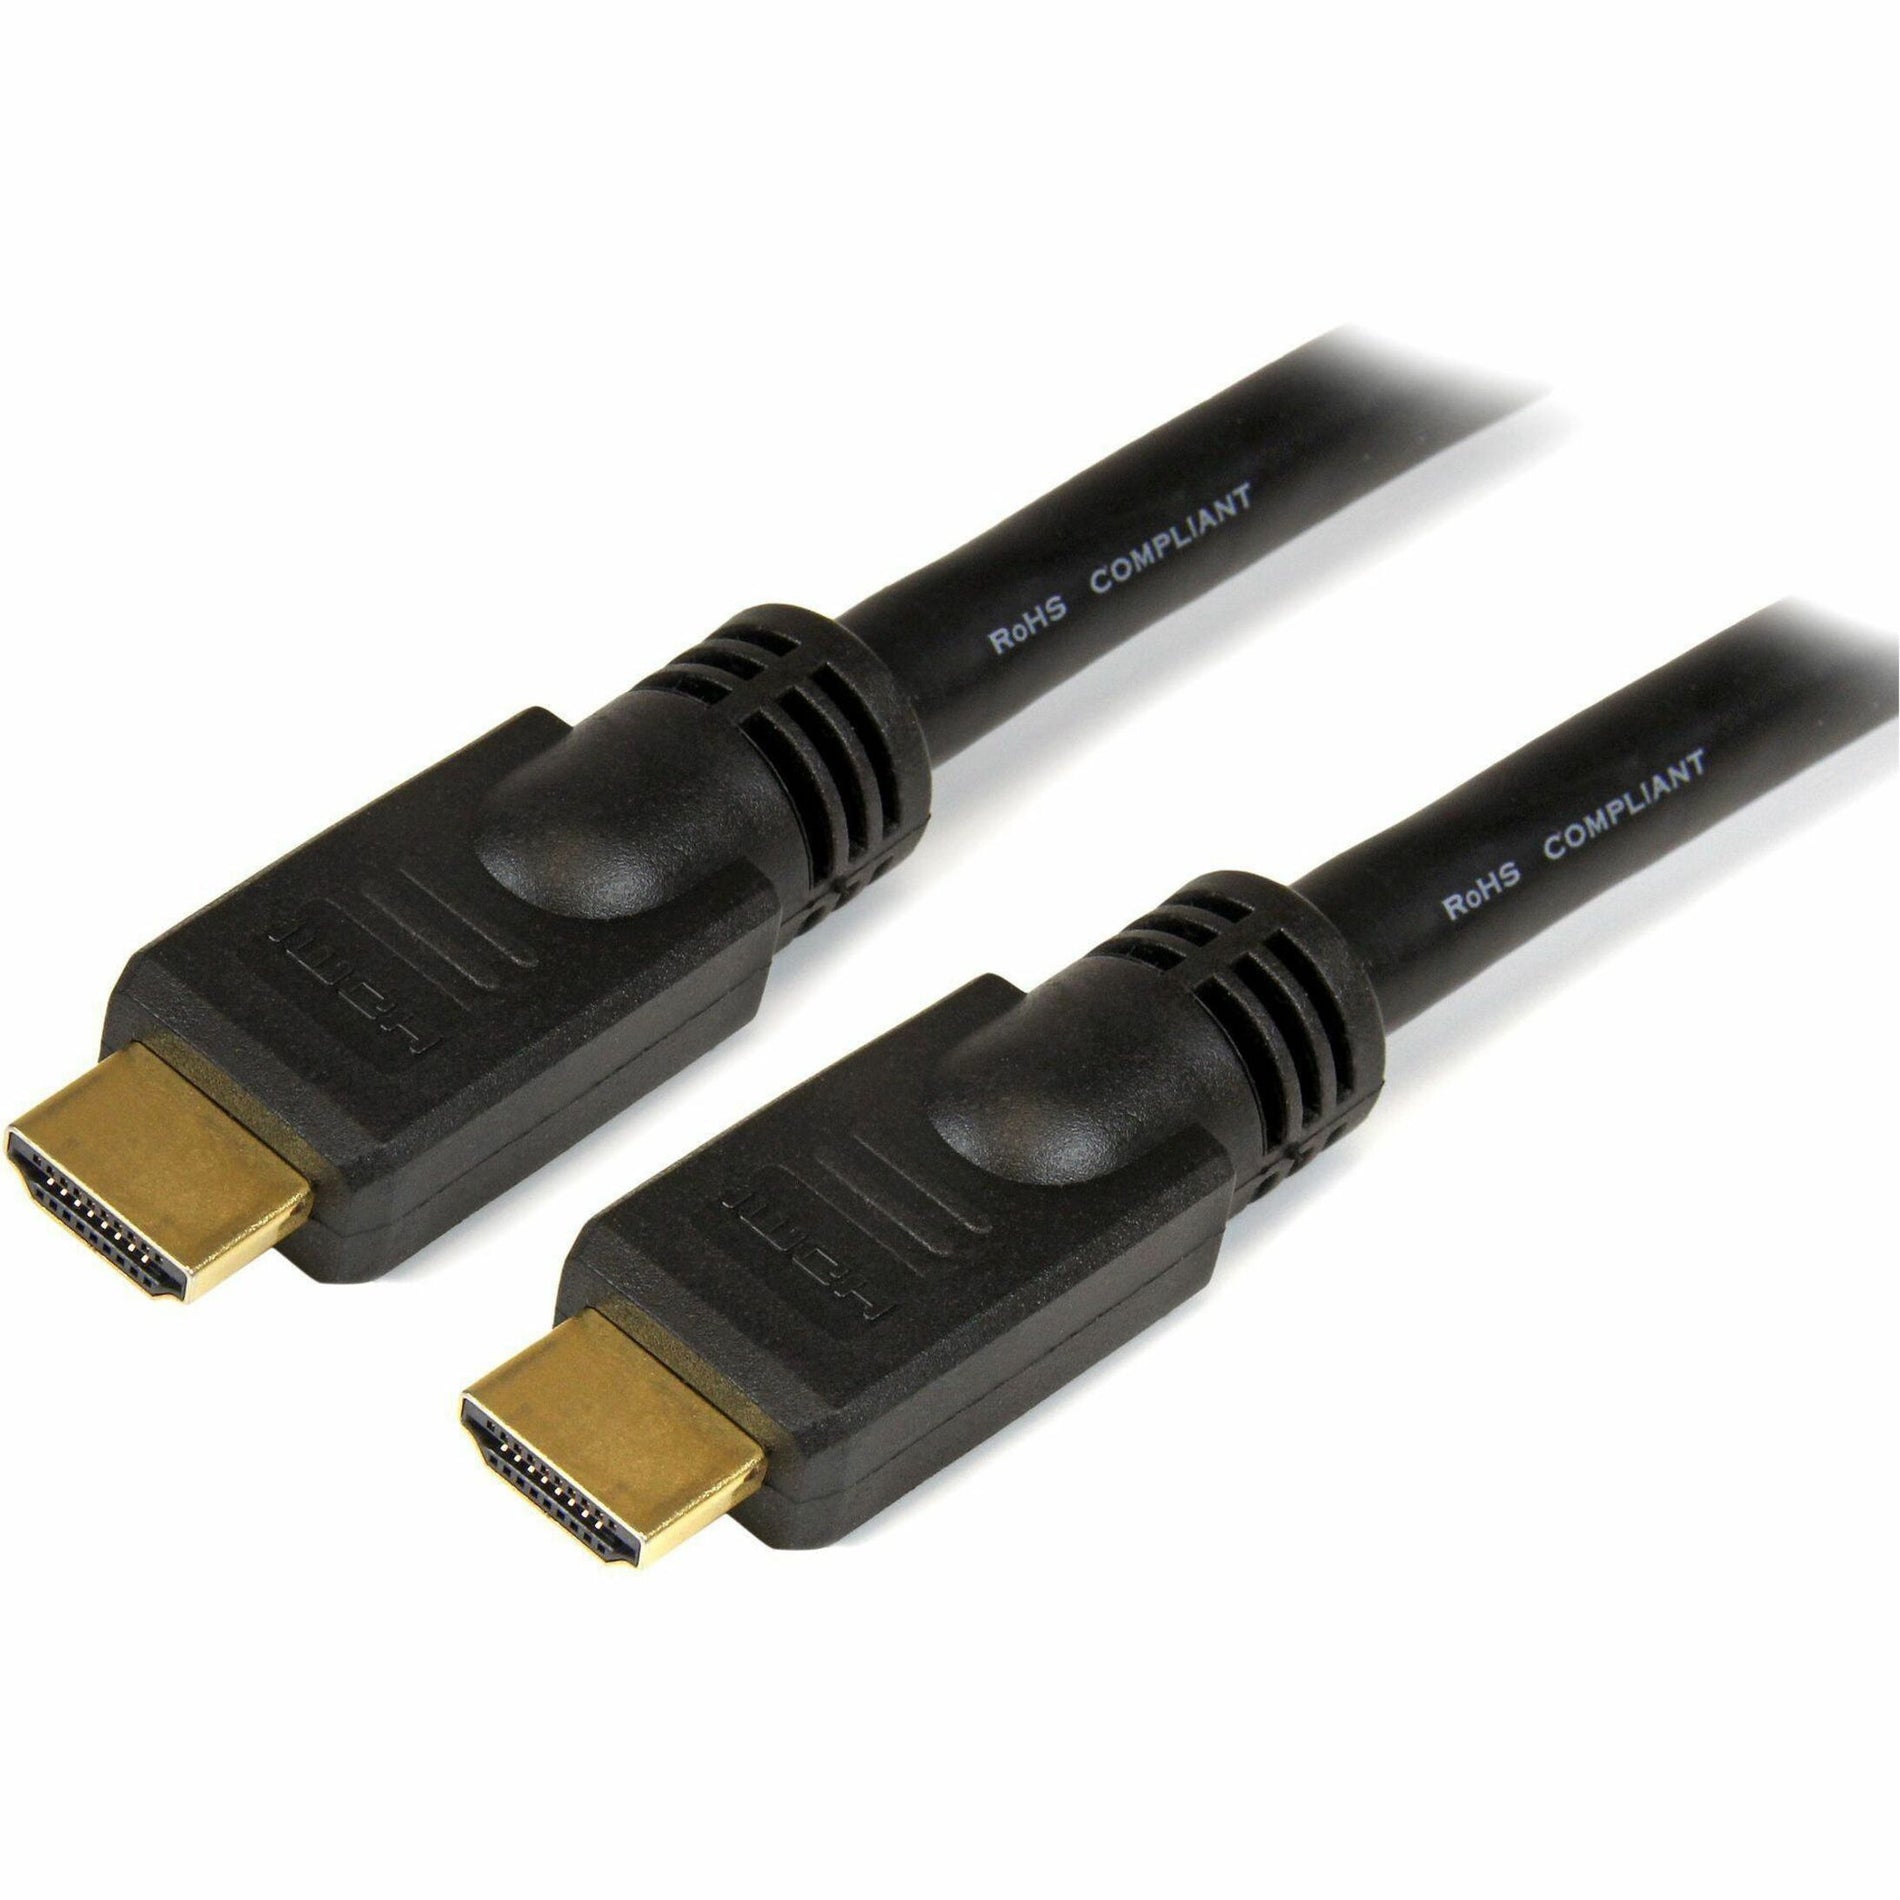 كابل HDMI عالي السرعة بطول 30 قدم - كابل HDMI Ultra HD 4k x 2k ، تخفيف الضغط ، خالٍ من التآكل ، مصبوب ، موصلات مطلية بالذهب ، أسود StarTech.com ستارتيك.كوم